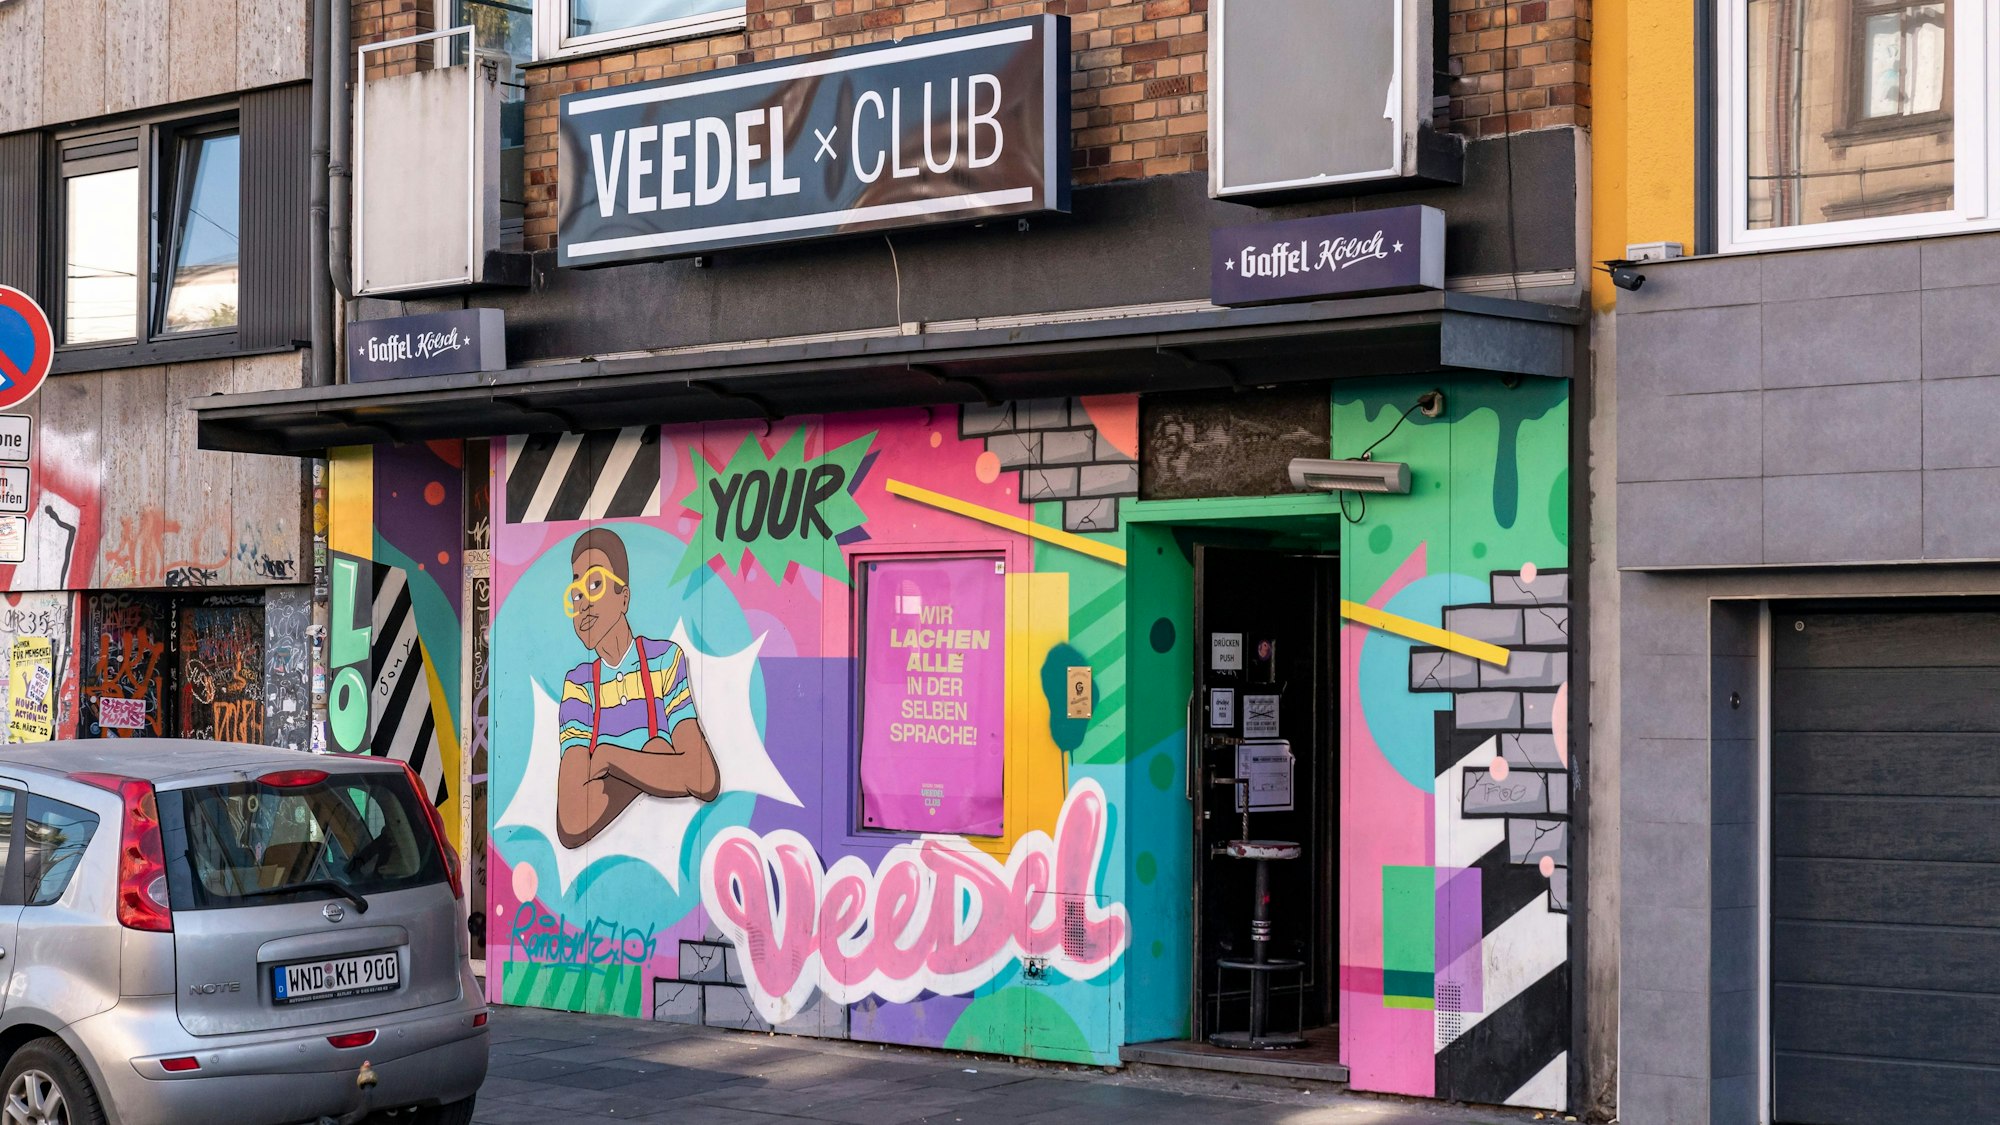 Veedel-Club auf der Luxemburger Straße in der Kölner Innenstadt von außen, bunt besprüht mit Graffitis